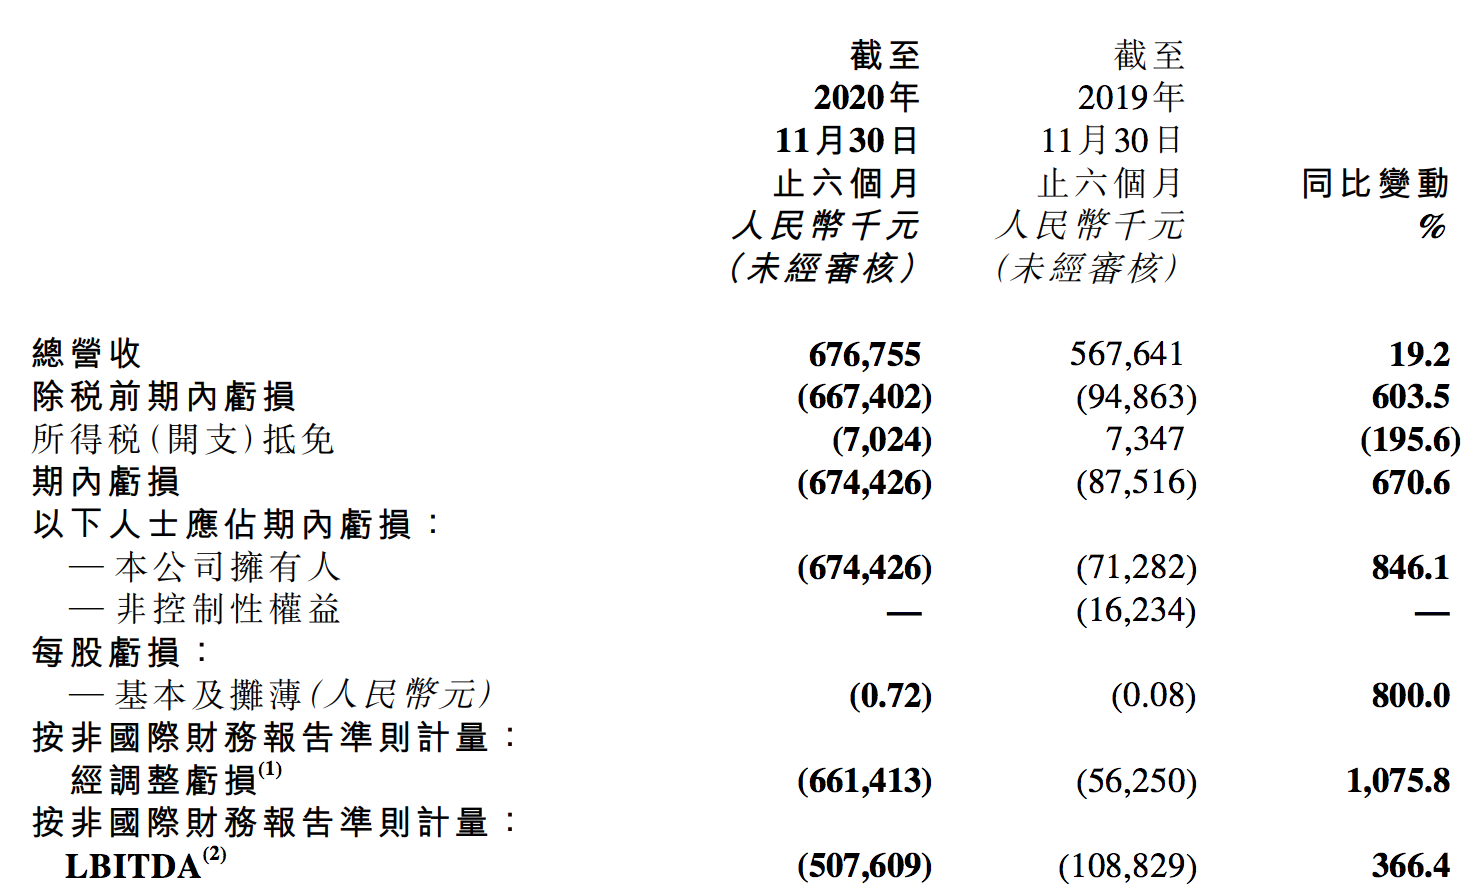 新东方在线的喜与忧：K12增长、多项业务下滑，半年巨亏7亿元